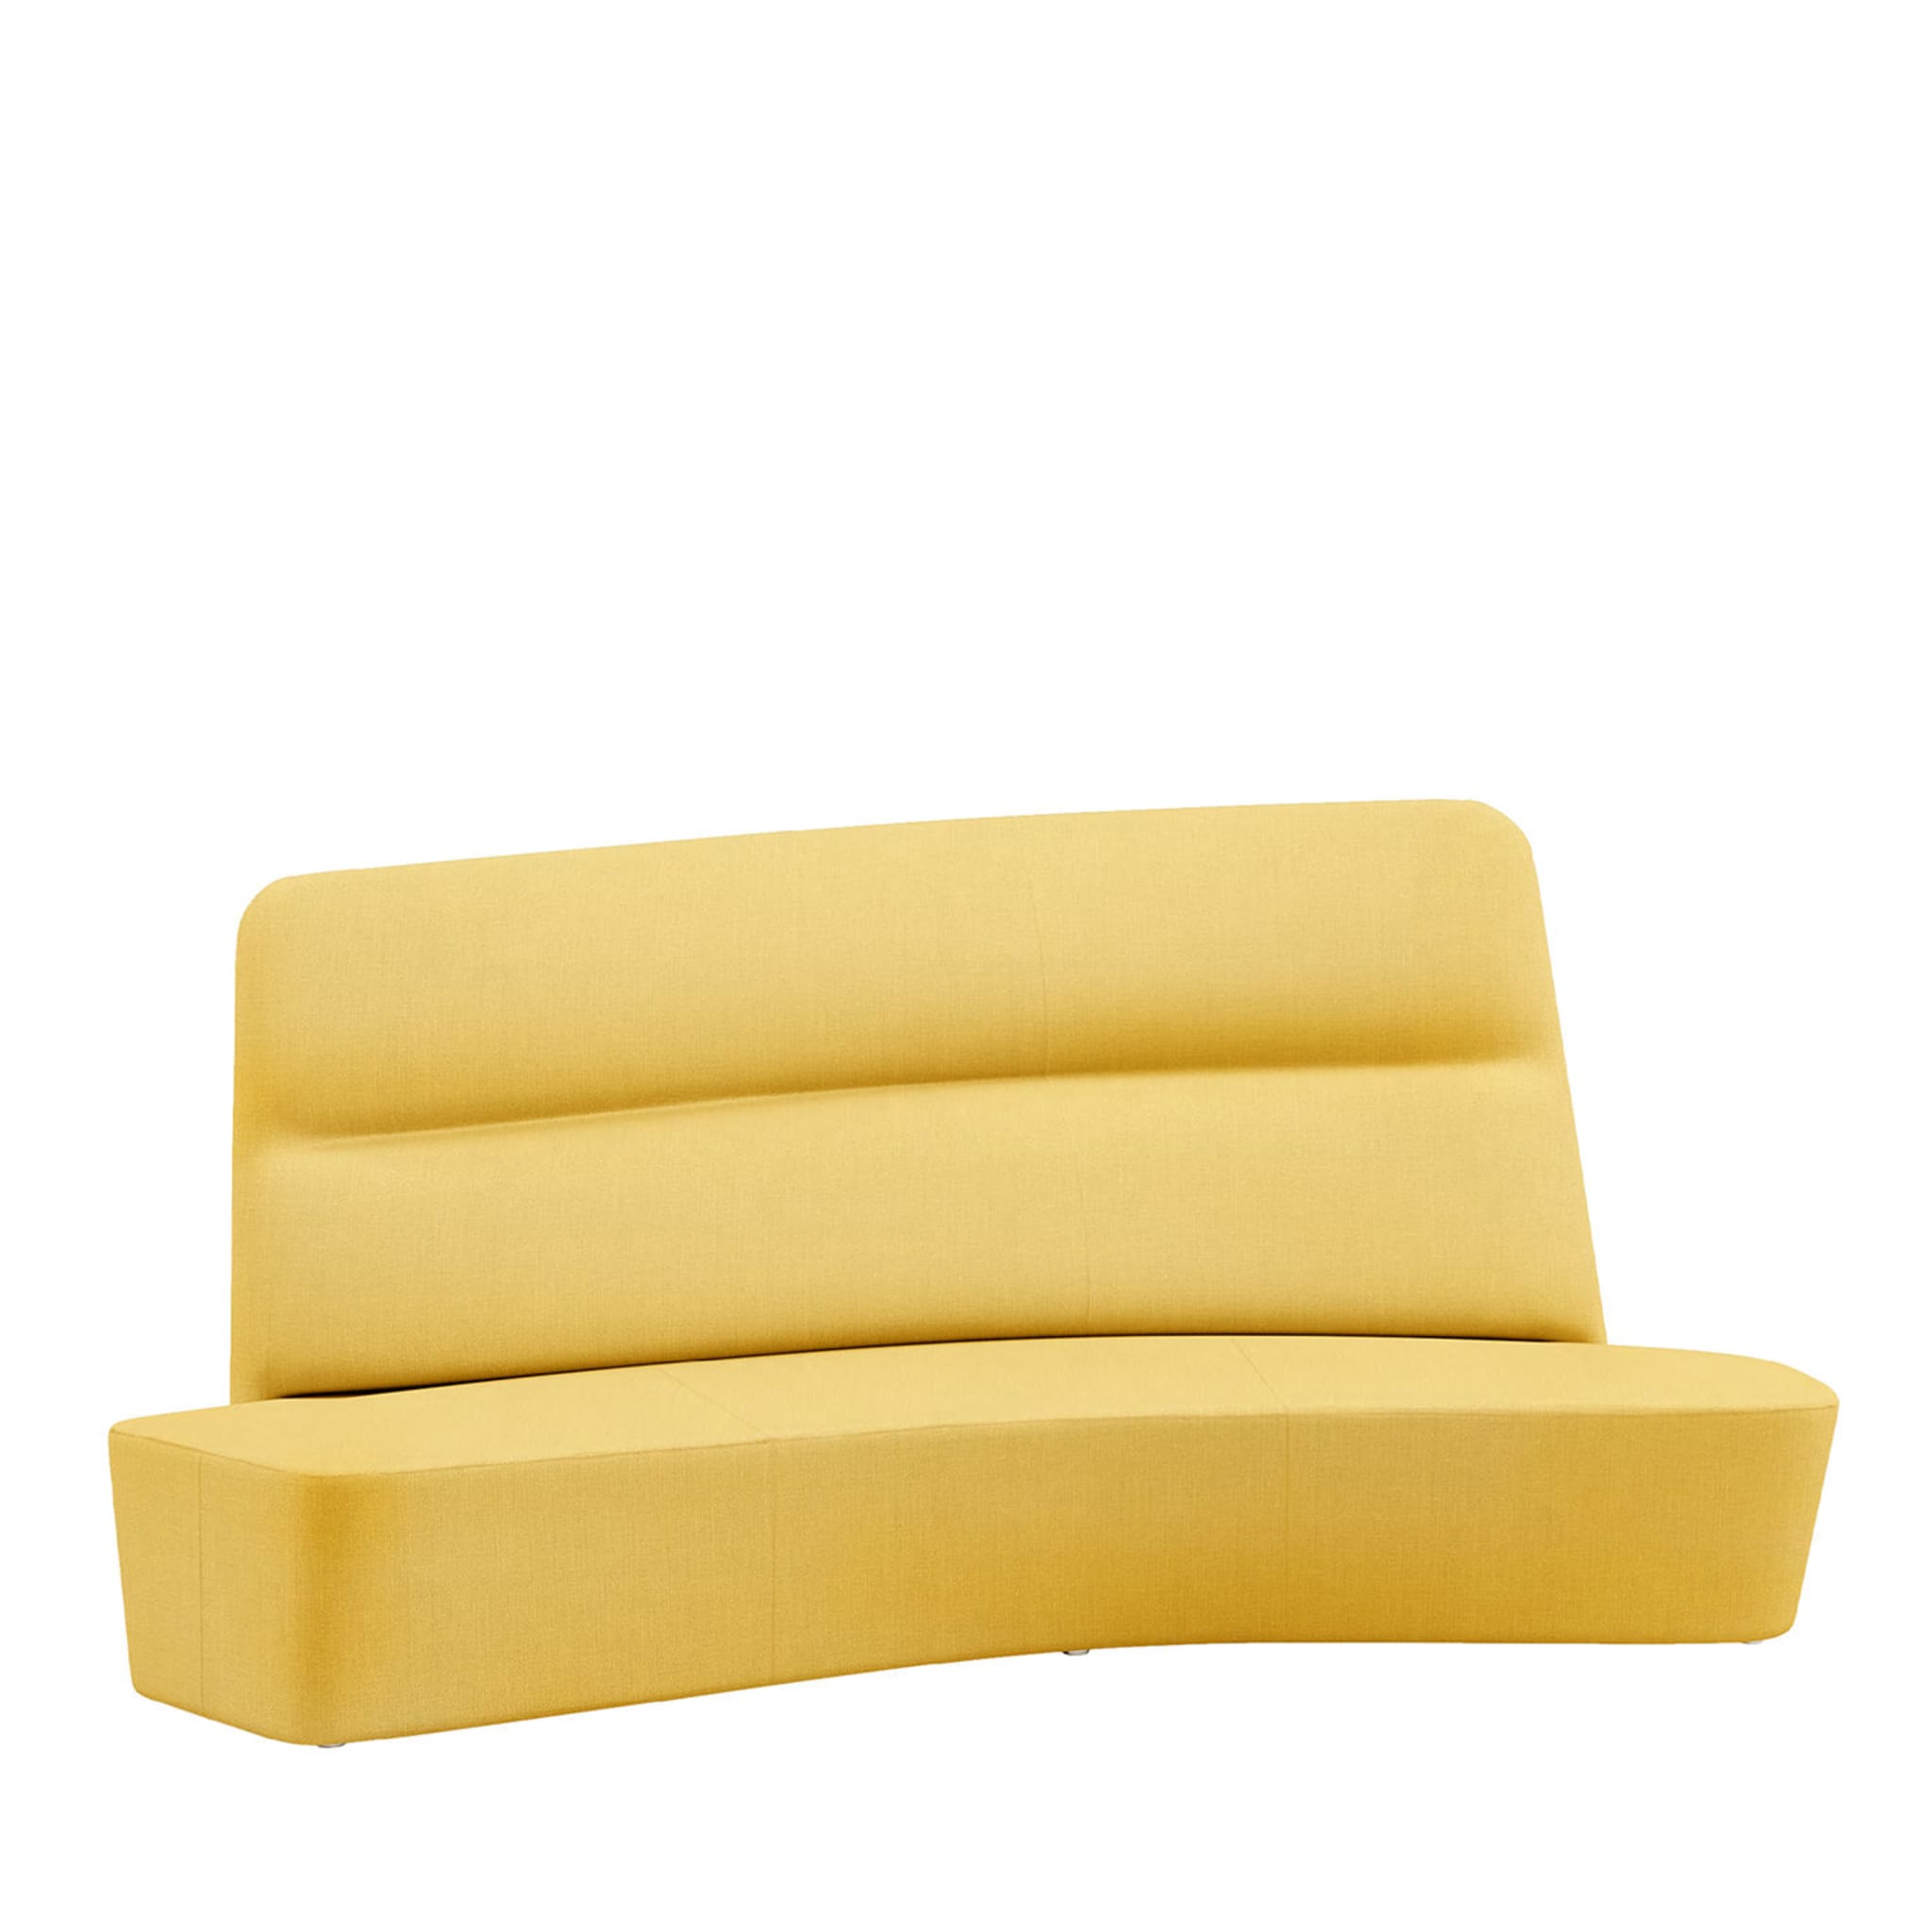 Canapé en alcôve jaune polaire - Vue principale